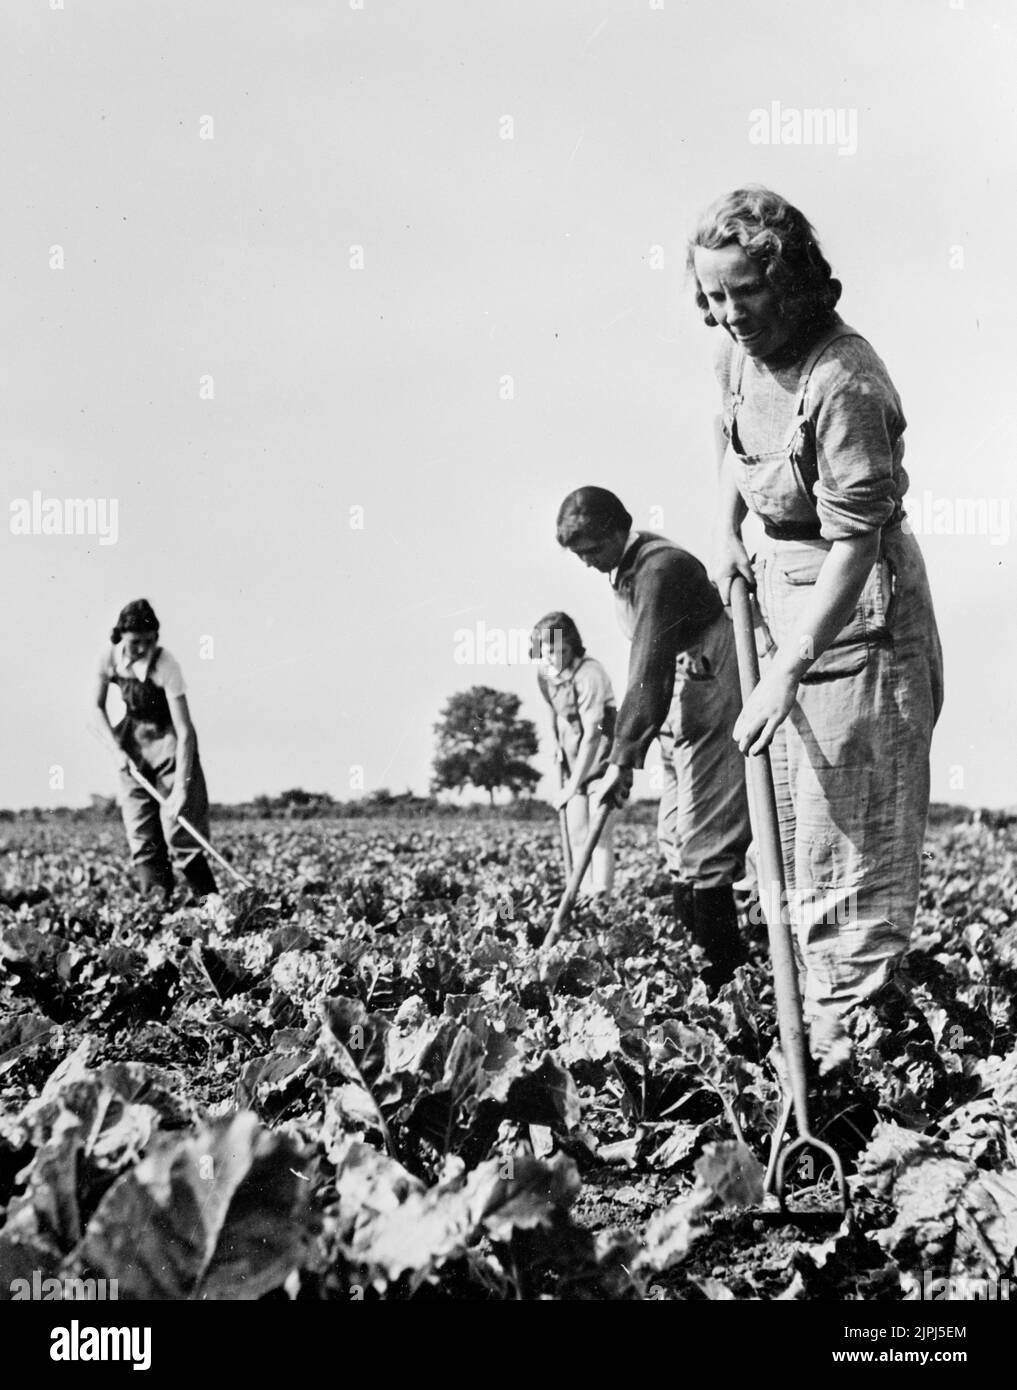 Mujeres que trabajan en campos que producen cultivos durante la guerra. 1943 El Ejército de Tierra de Mujeres (WLA) hizo una contribución significativa para impulsar la producción de alimentos en Gran Bretaña durante la Segunda Guerra Mundial. Foto de stock